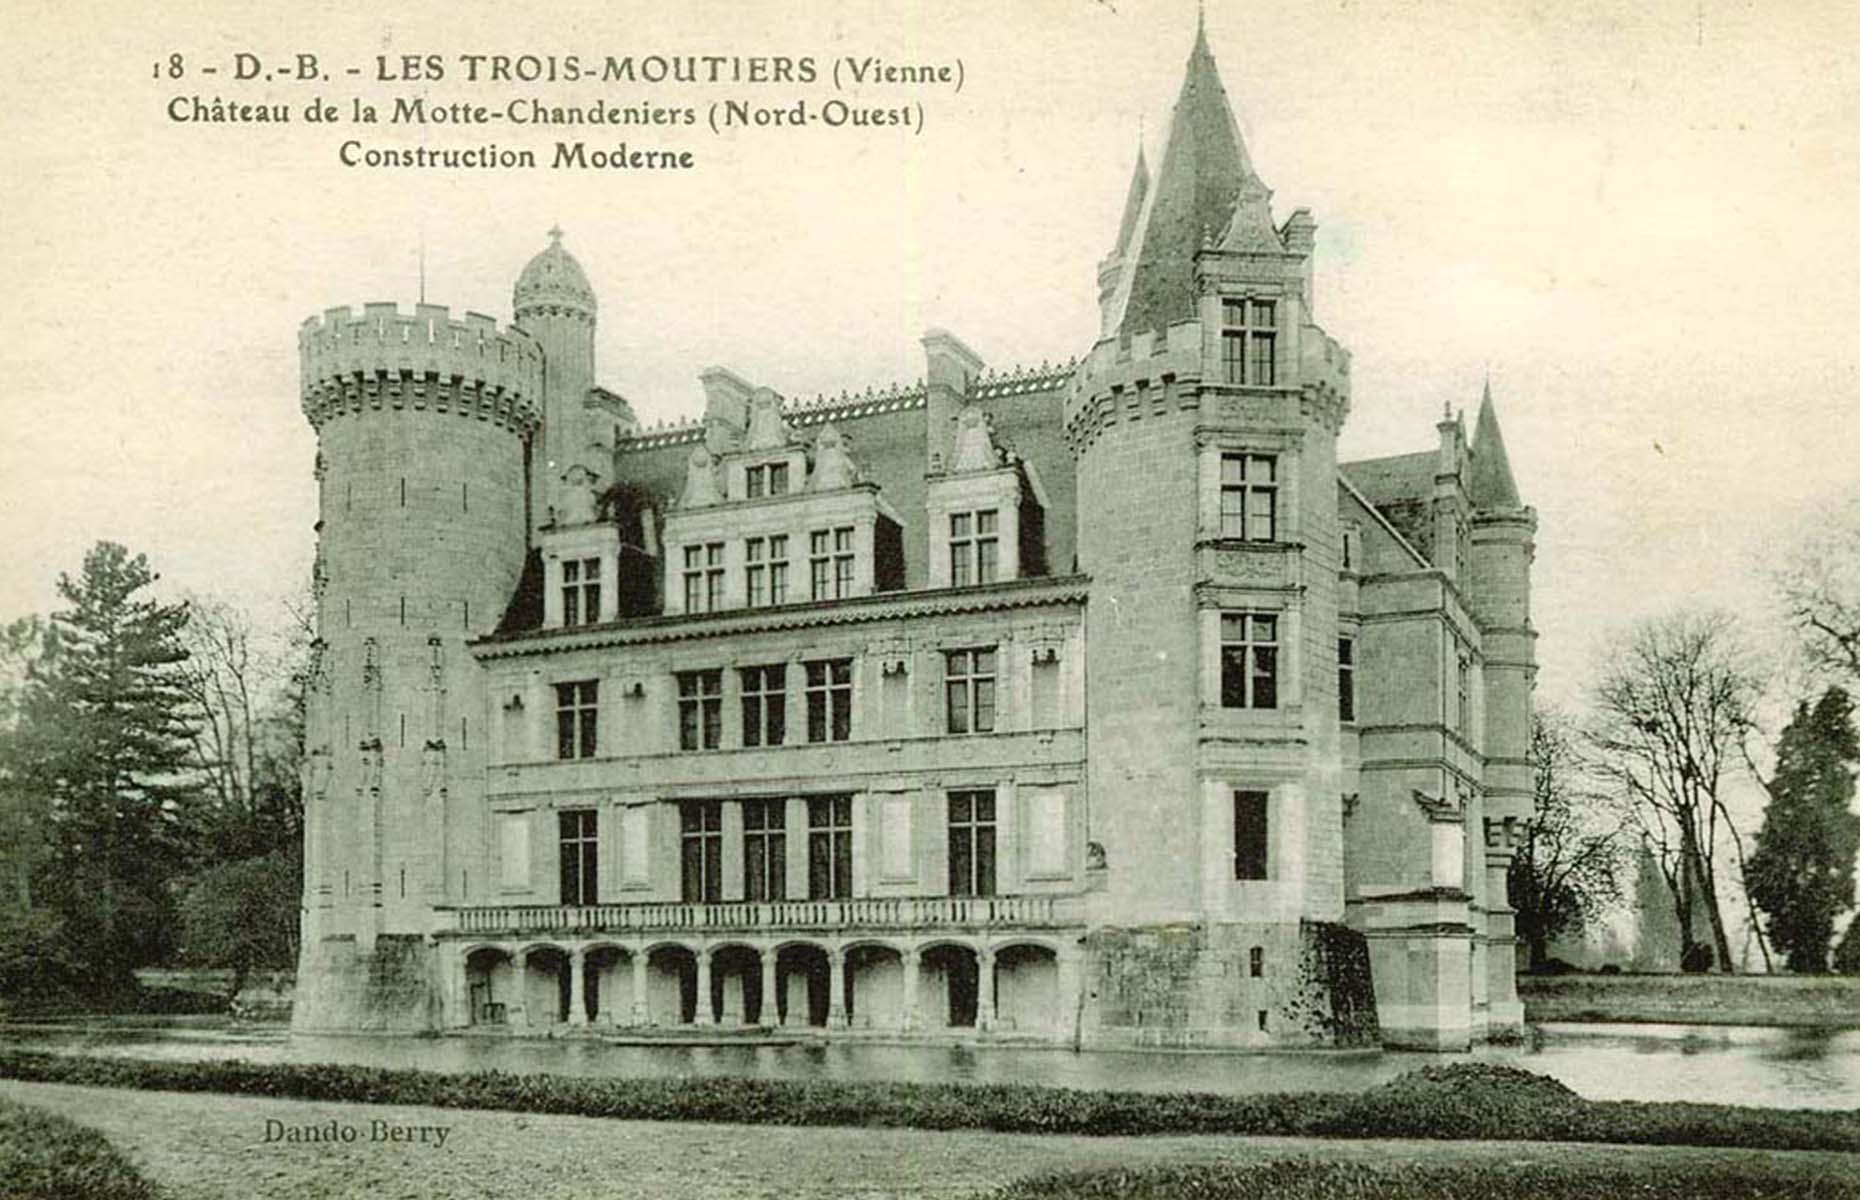 Château de la Mothe-Chandeniers, Vienne, France